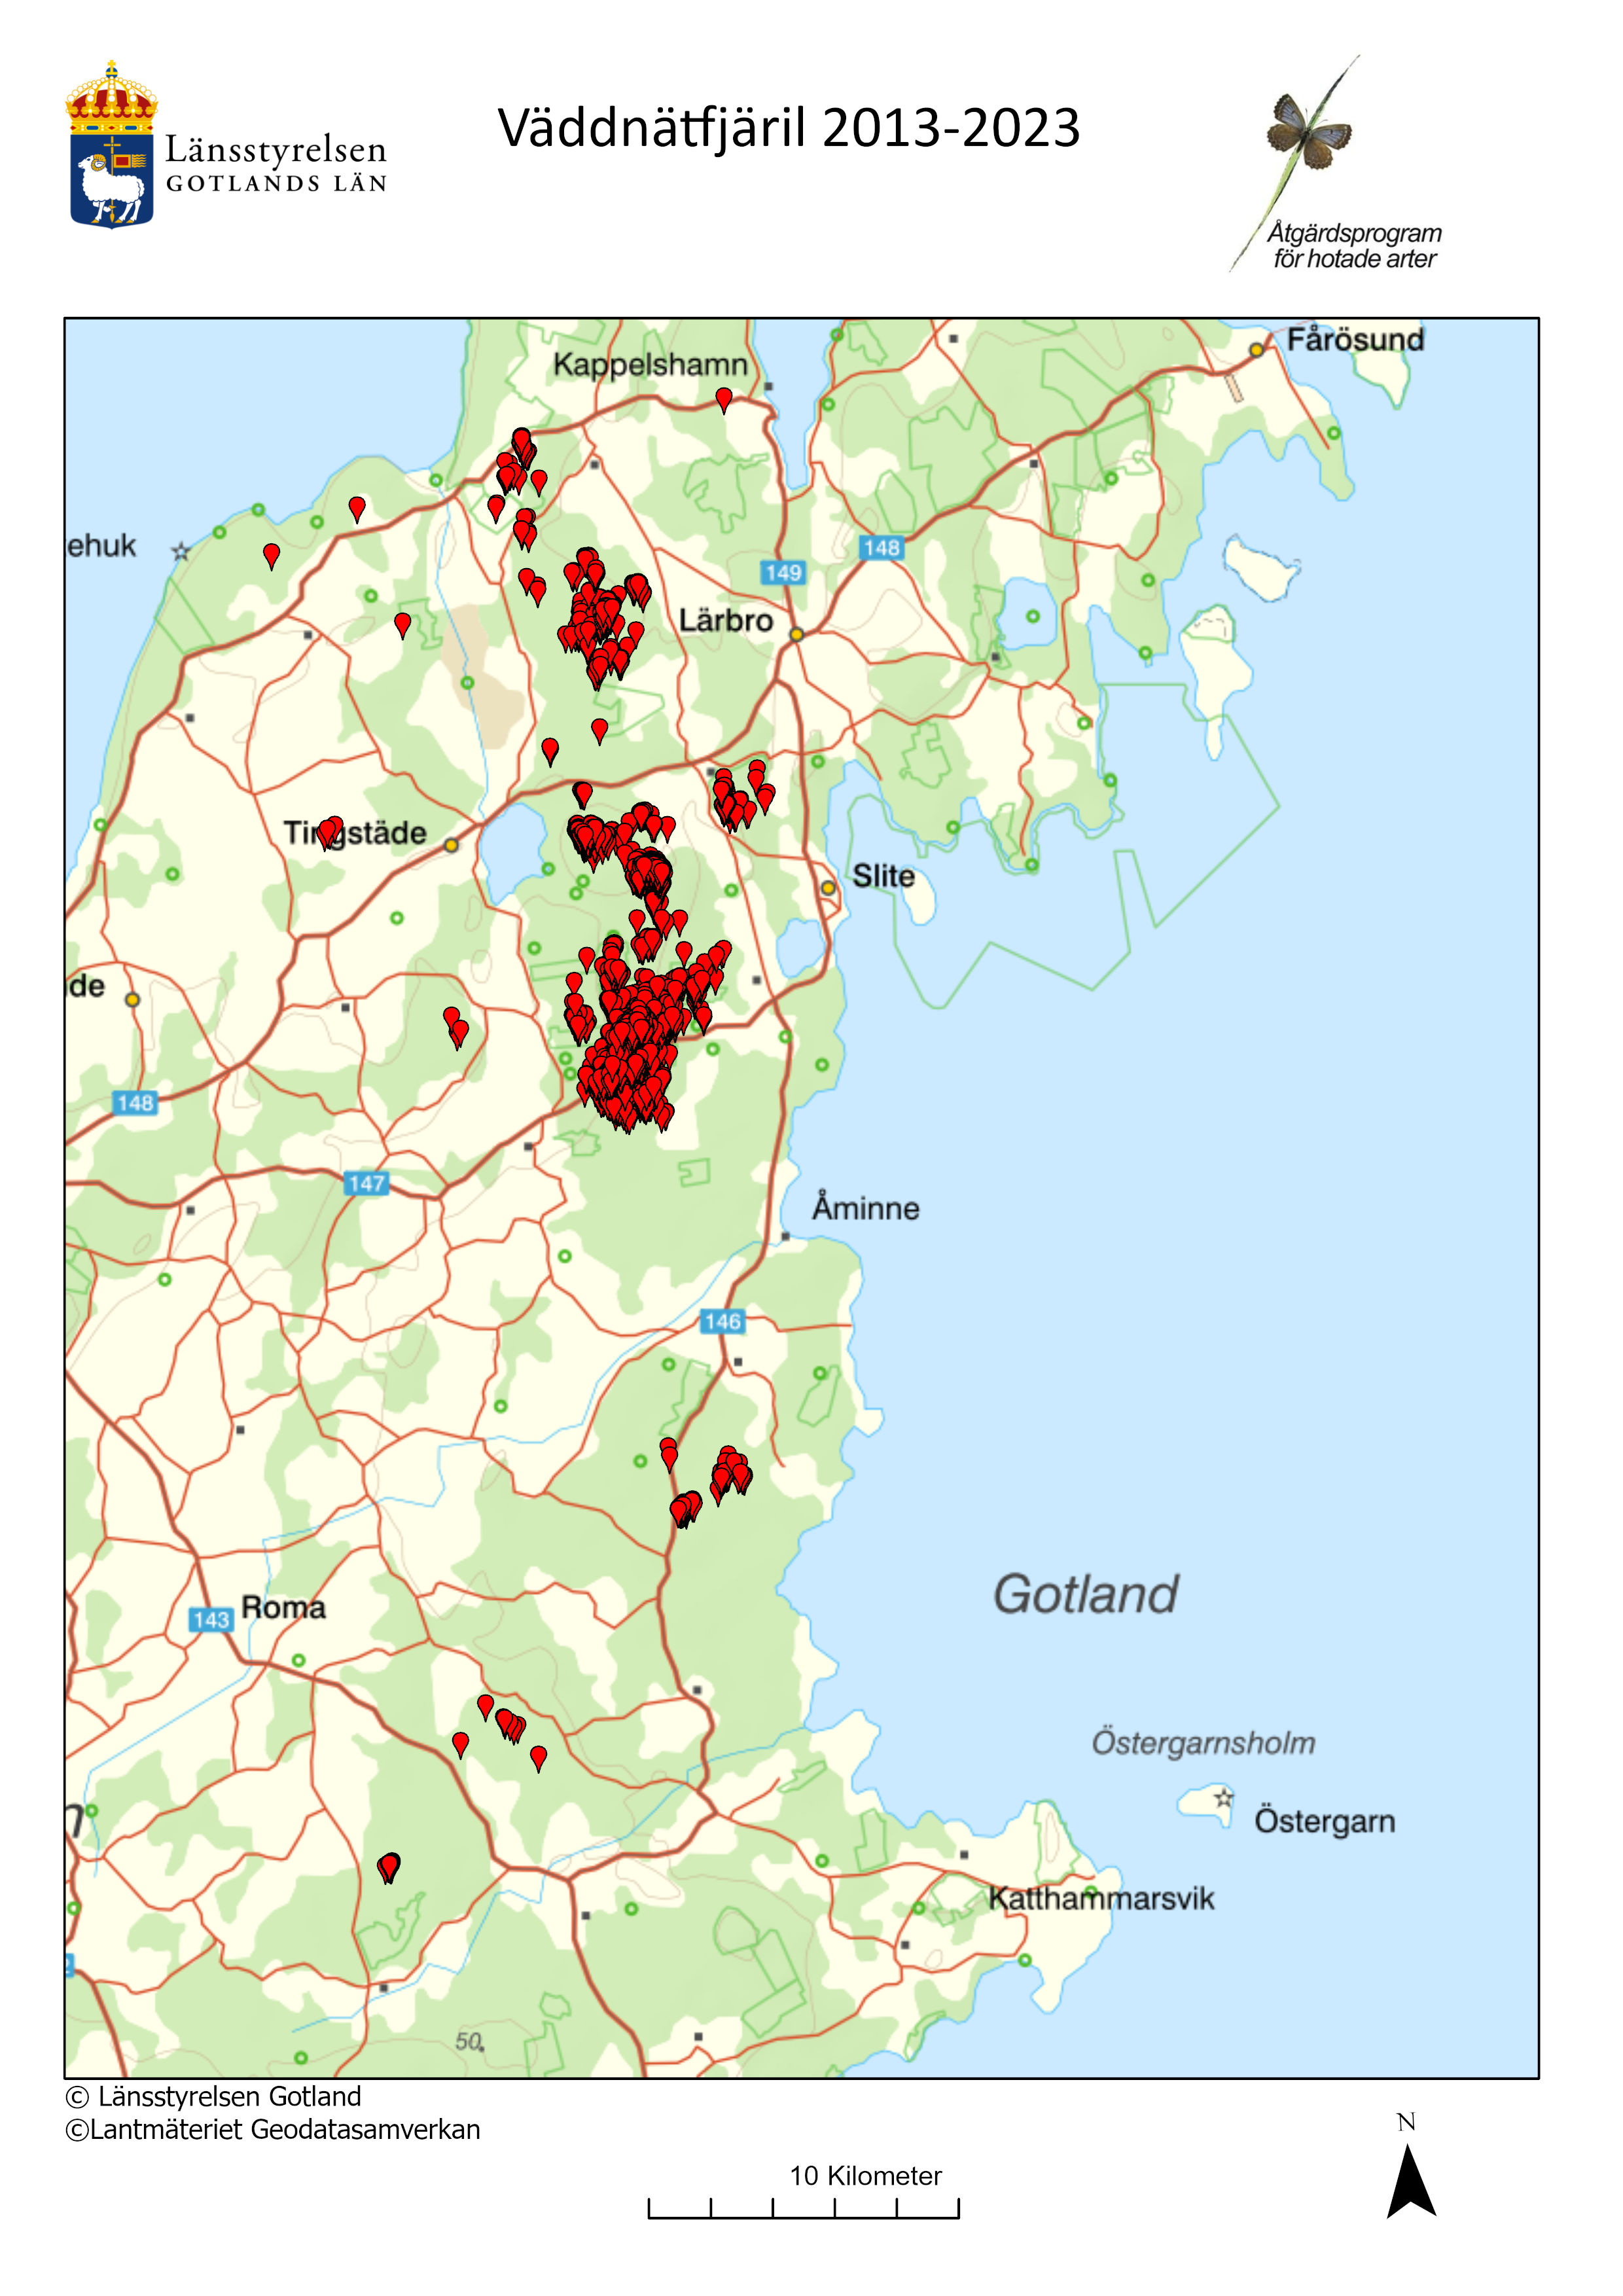 Väddnätfjäril på Gotland, karta